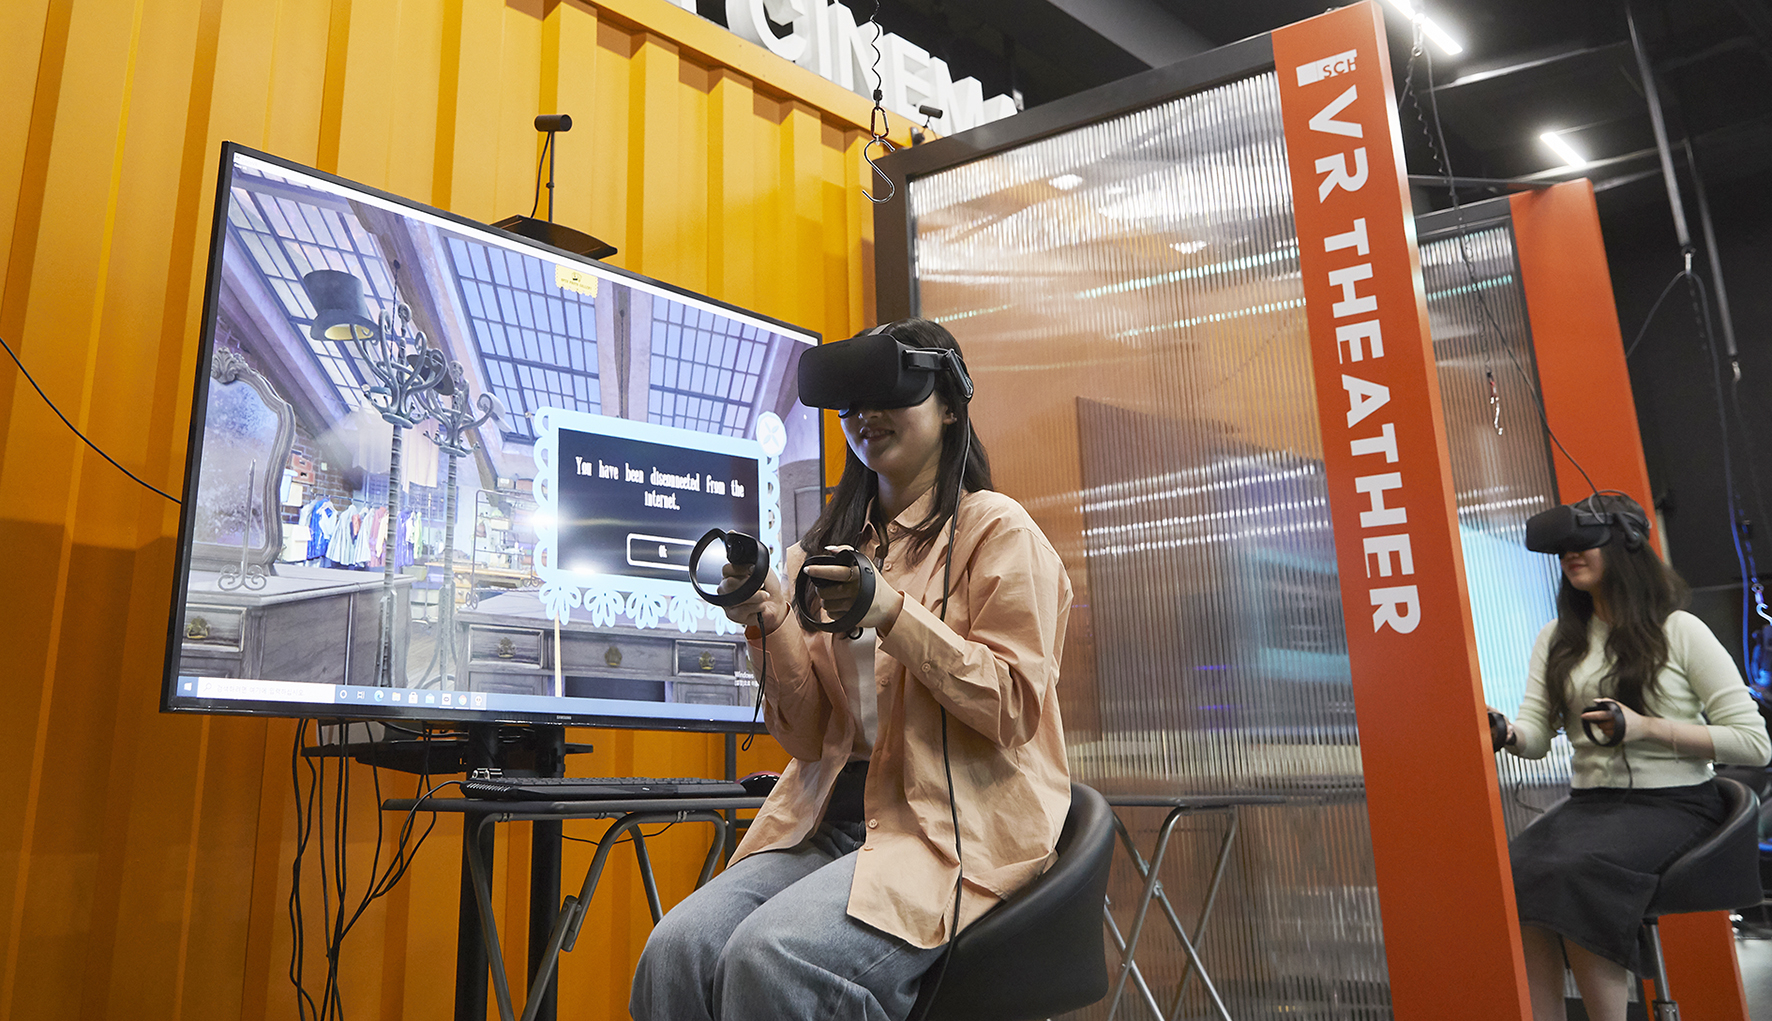 순천향대 VR 스튜디오에서 VR기기를 활용한 수업이 진행되고 있다. 순천향대 제공